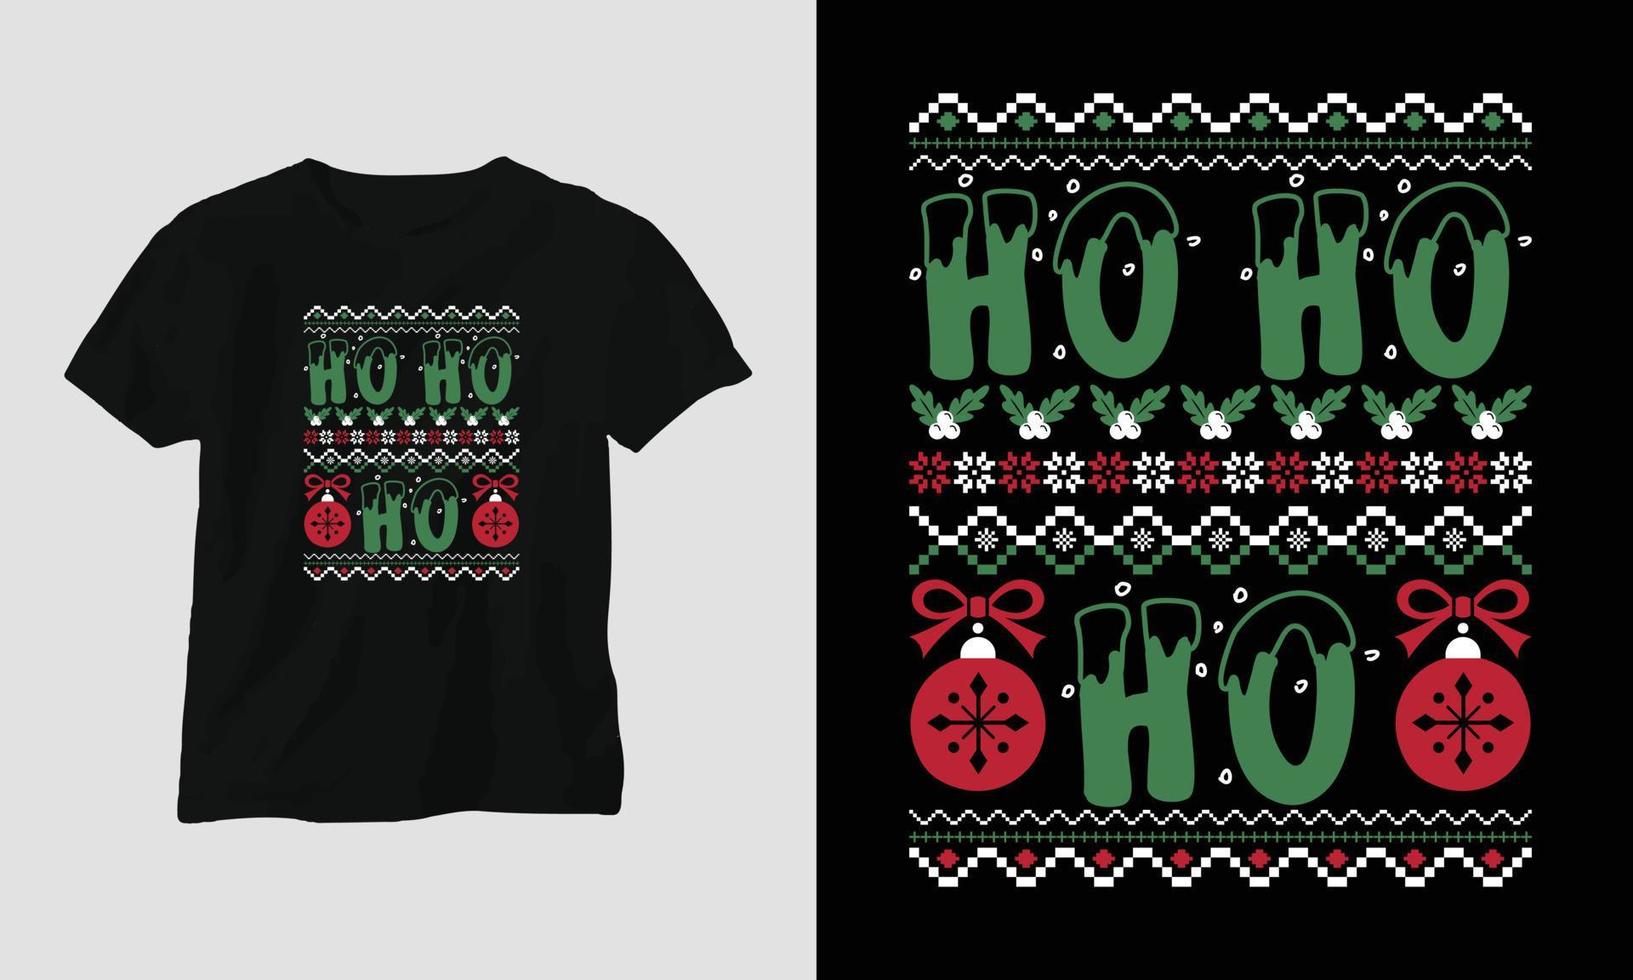 Ho ho ho - Ugly Christmas Retro style T-shirt Design vector